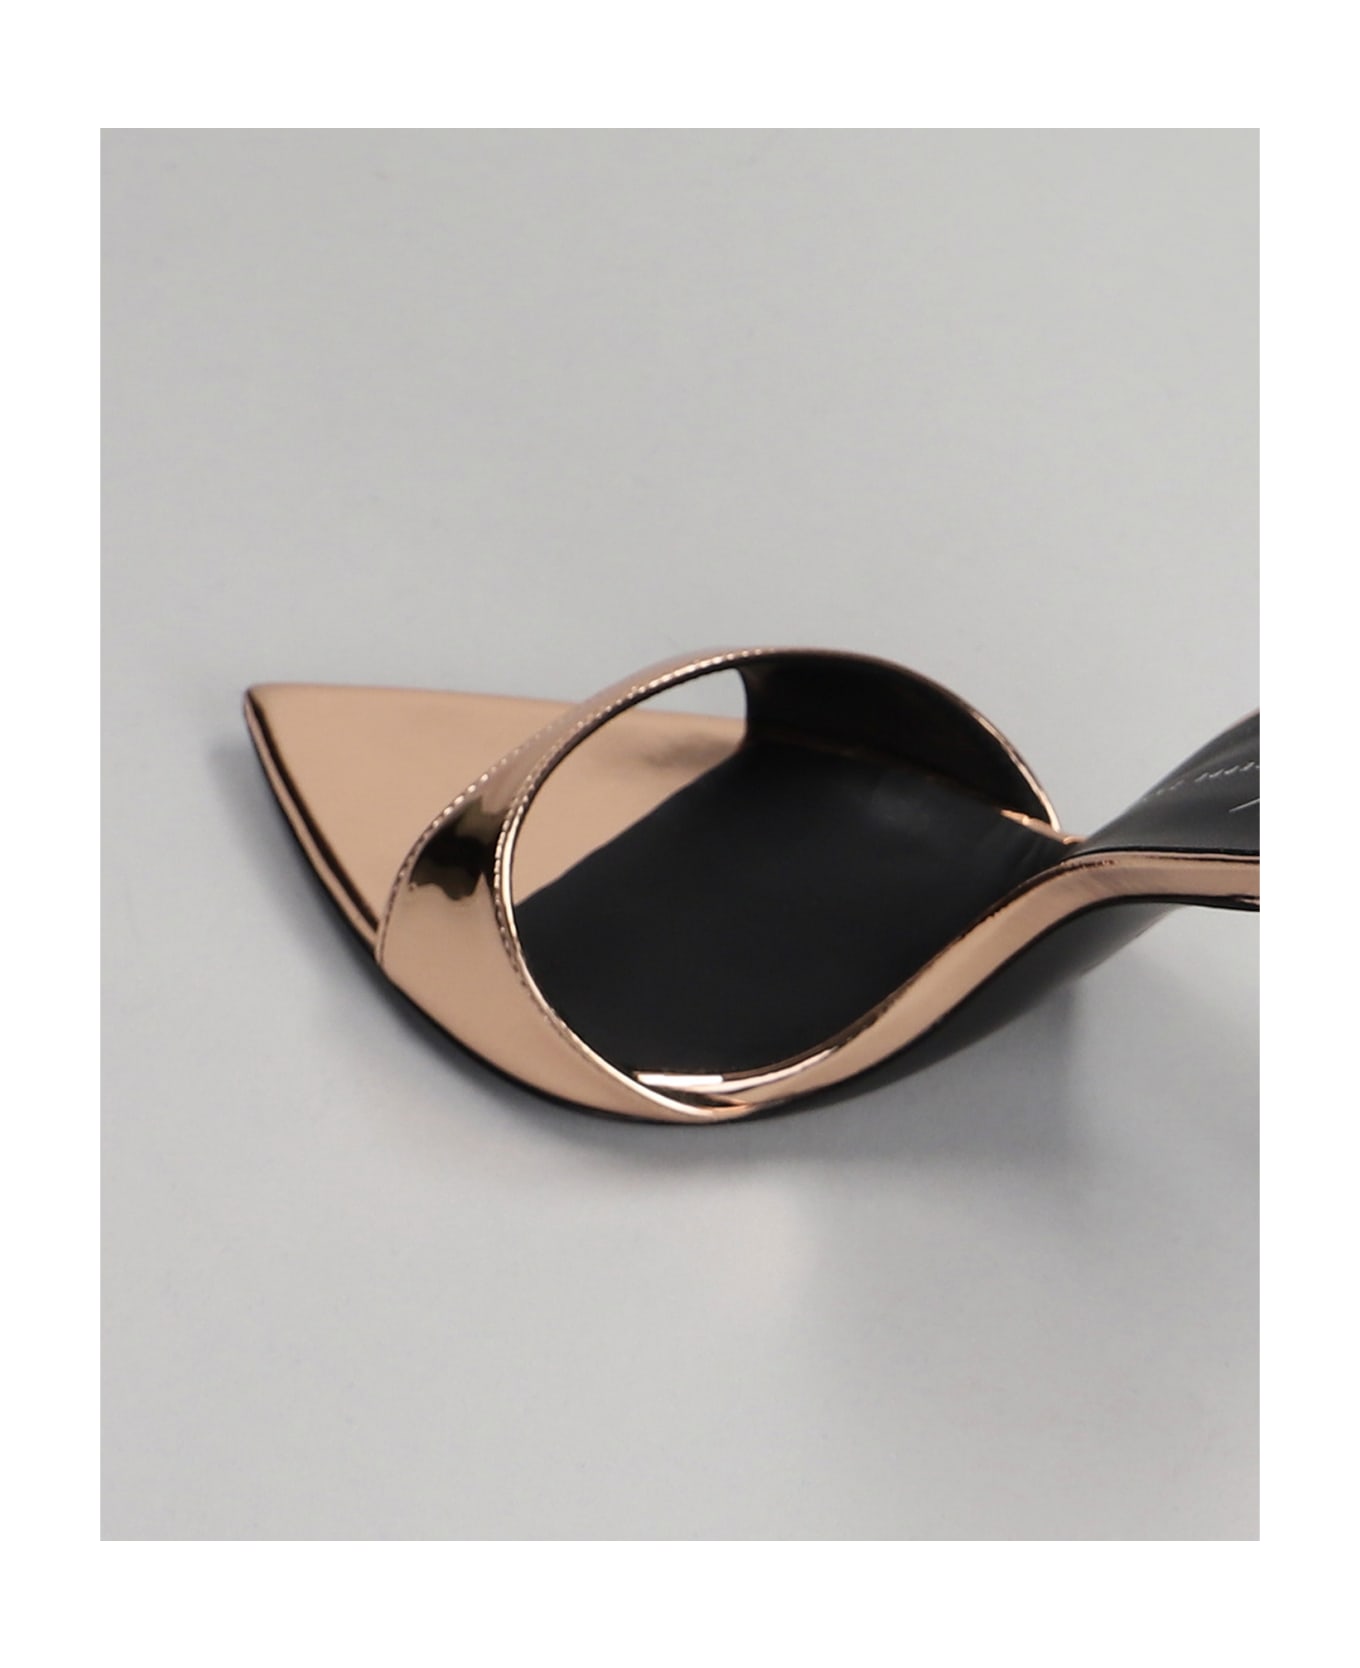 Giuseppe Zanotti Intriigo Strap Sandals In Copper Leather - copper